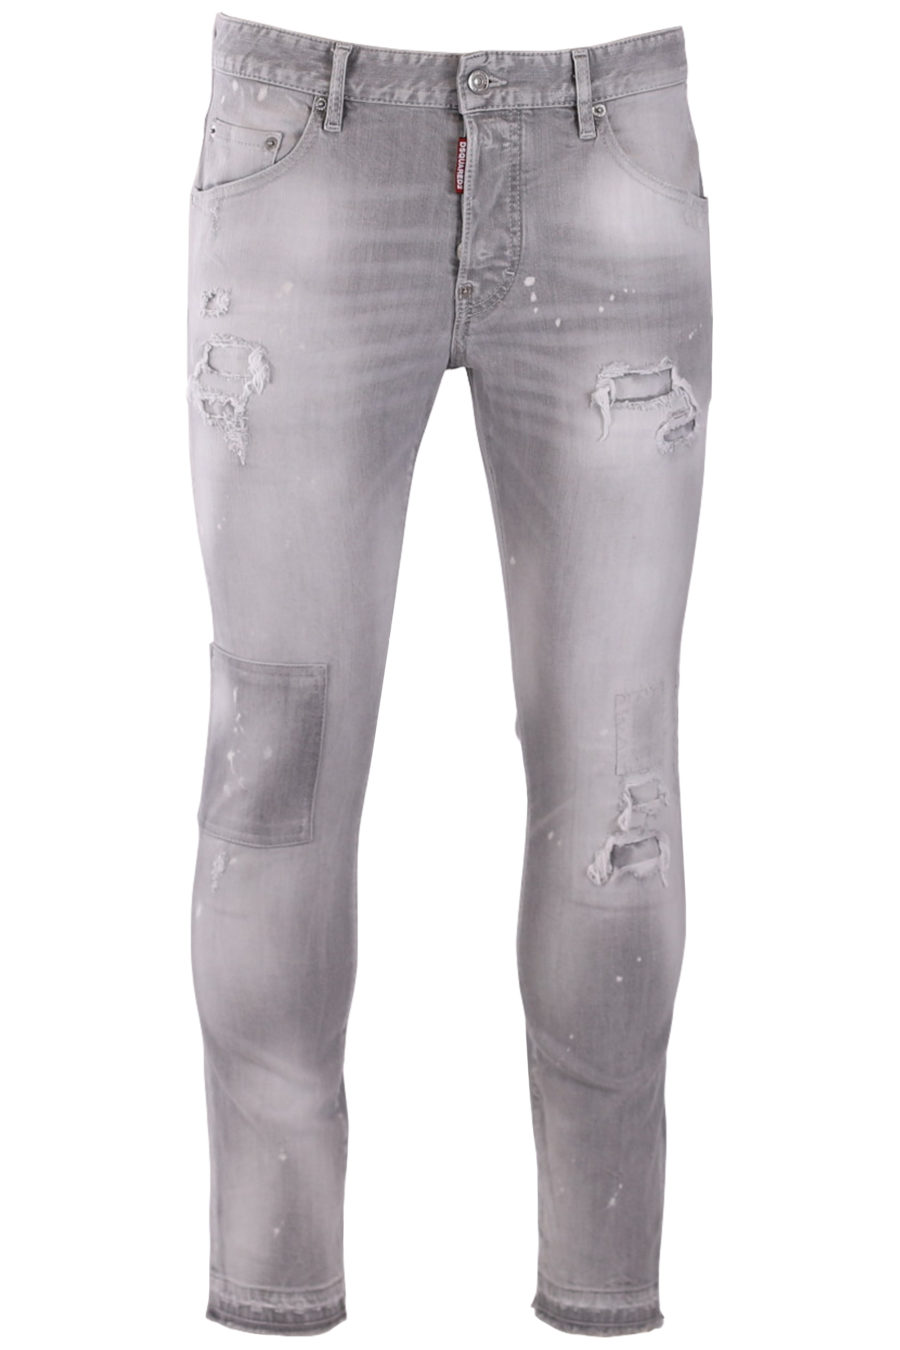 Pantalón vaquero "Skater" gris claro con parches - f6bfb6d0f2b749bb8ea017c36e51428904051841